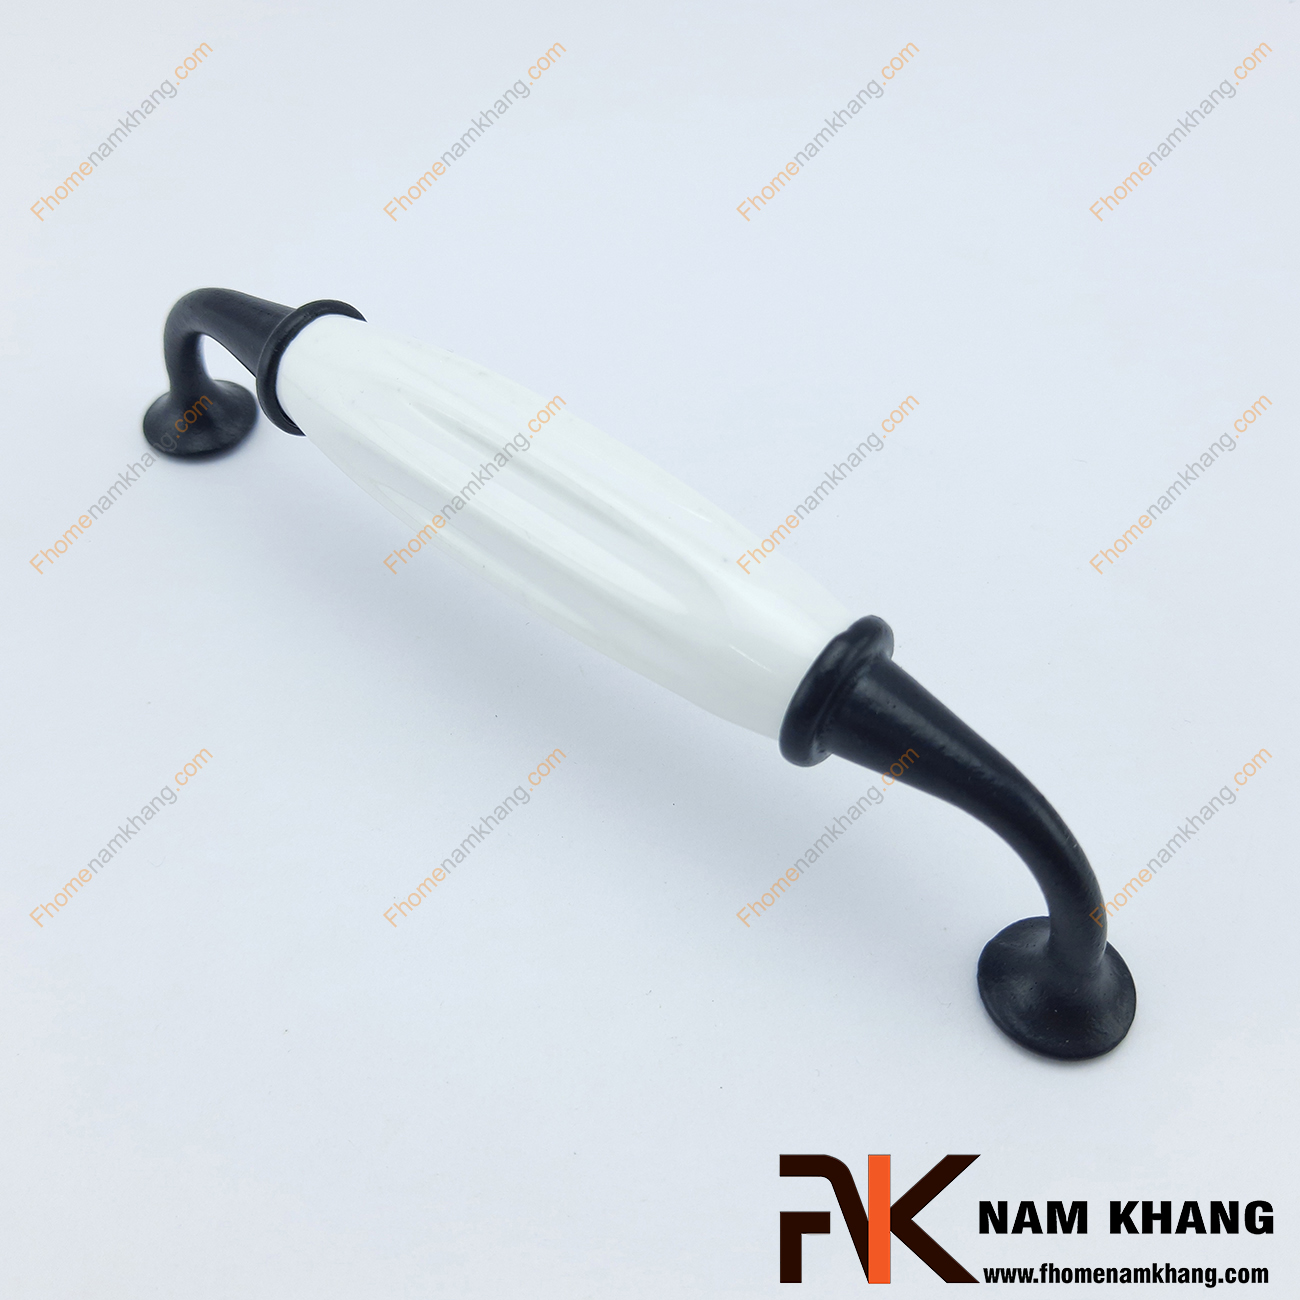 Tay nắm tủ phối sứ màu đen trắng NK322-96D là một dạng tay nắm có thiết kế rất  cổ, rất độc đáo. Được sản xuất trên chất liệu hợp kim cao cấp, kết hợp với loại sứ vân trắng ngà cao cấp rất lạ mắt nhưng có độ bền cao. 